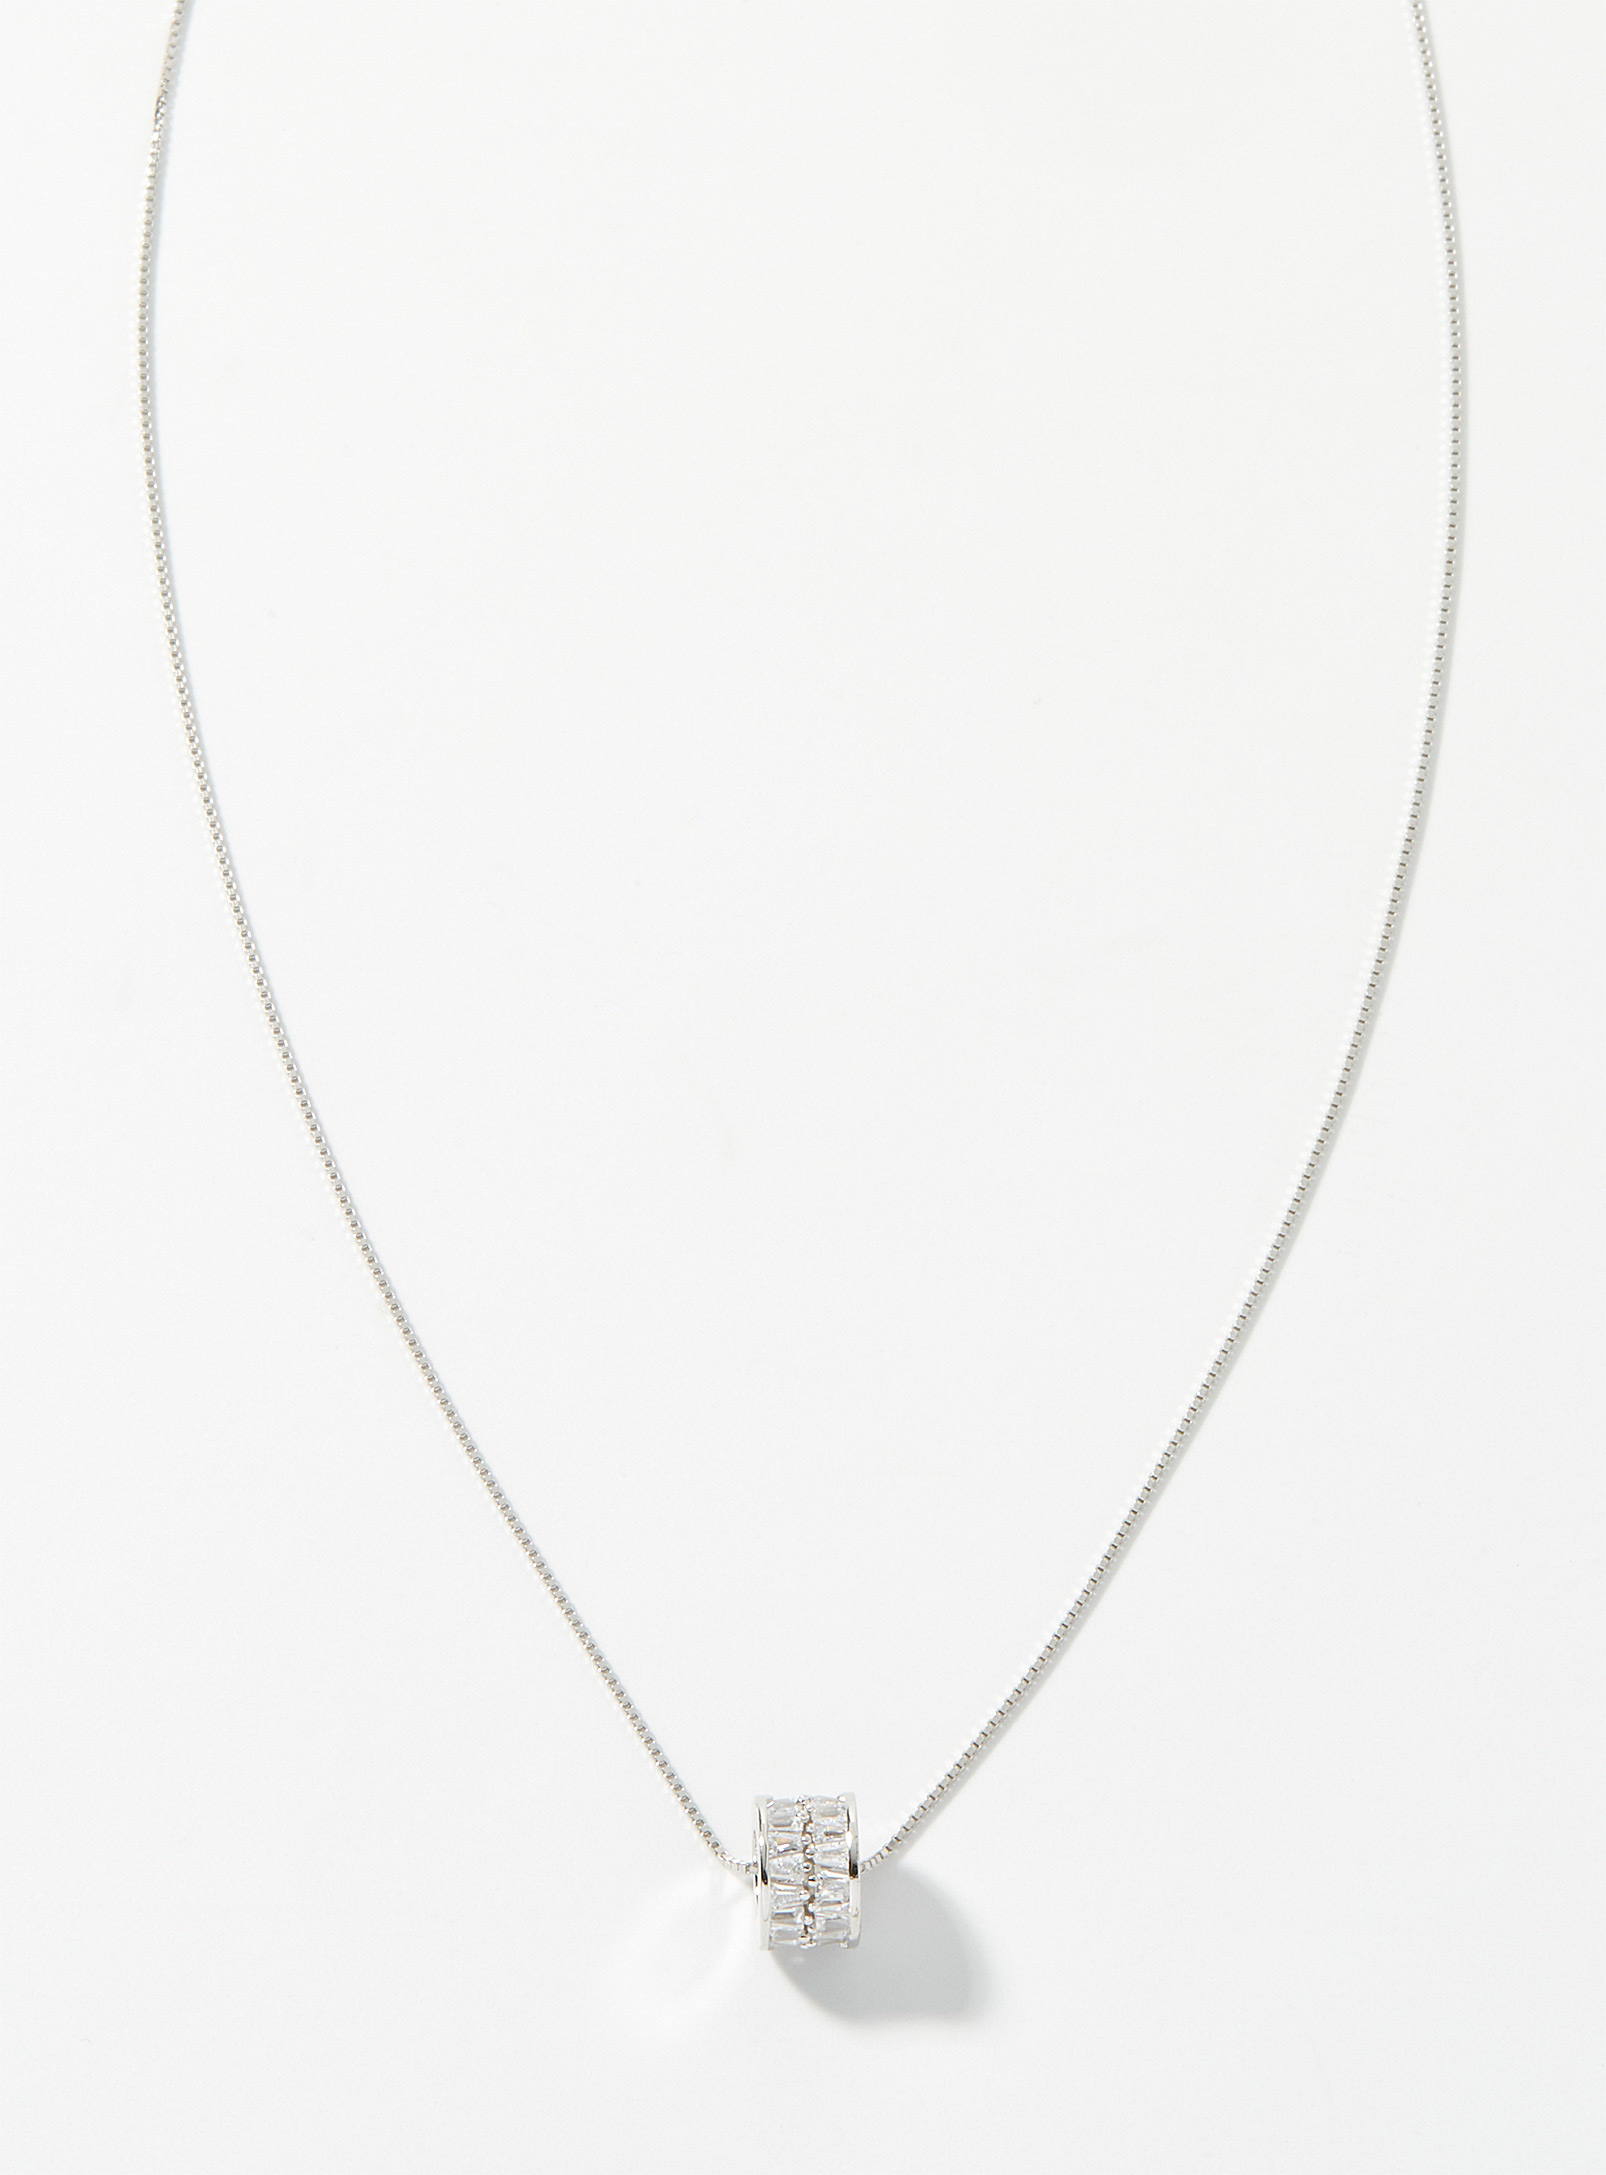 Simons - Women's Double-chain necklace